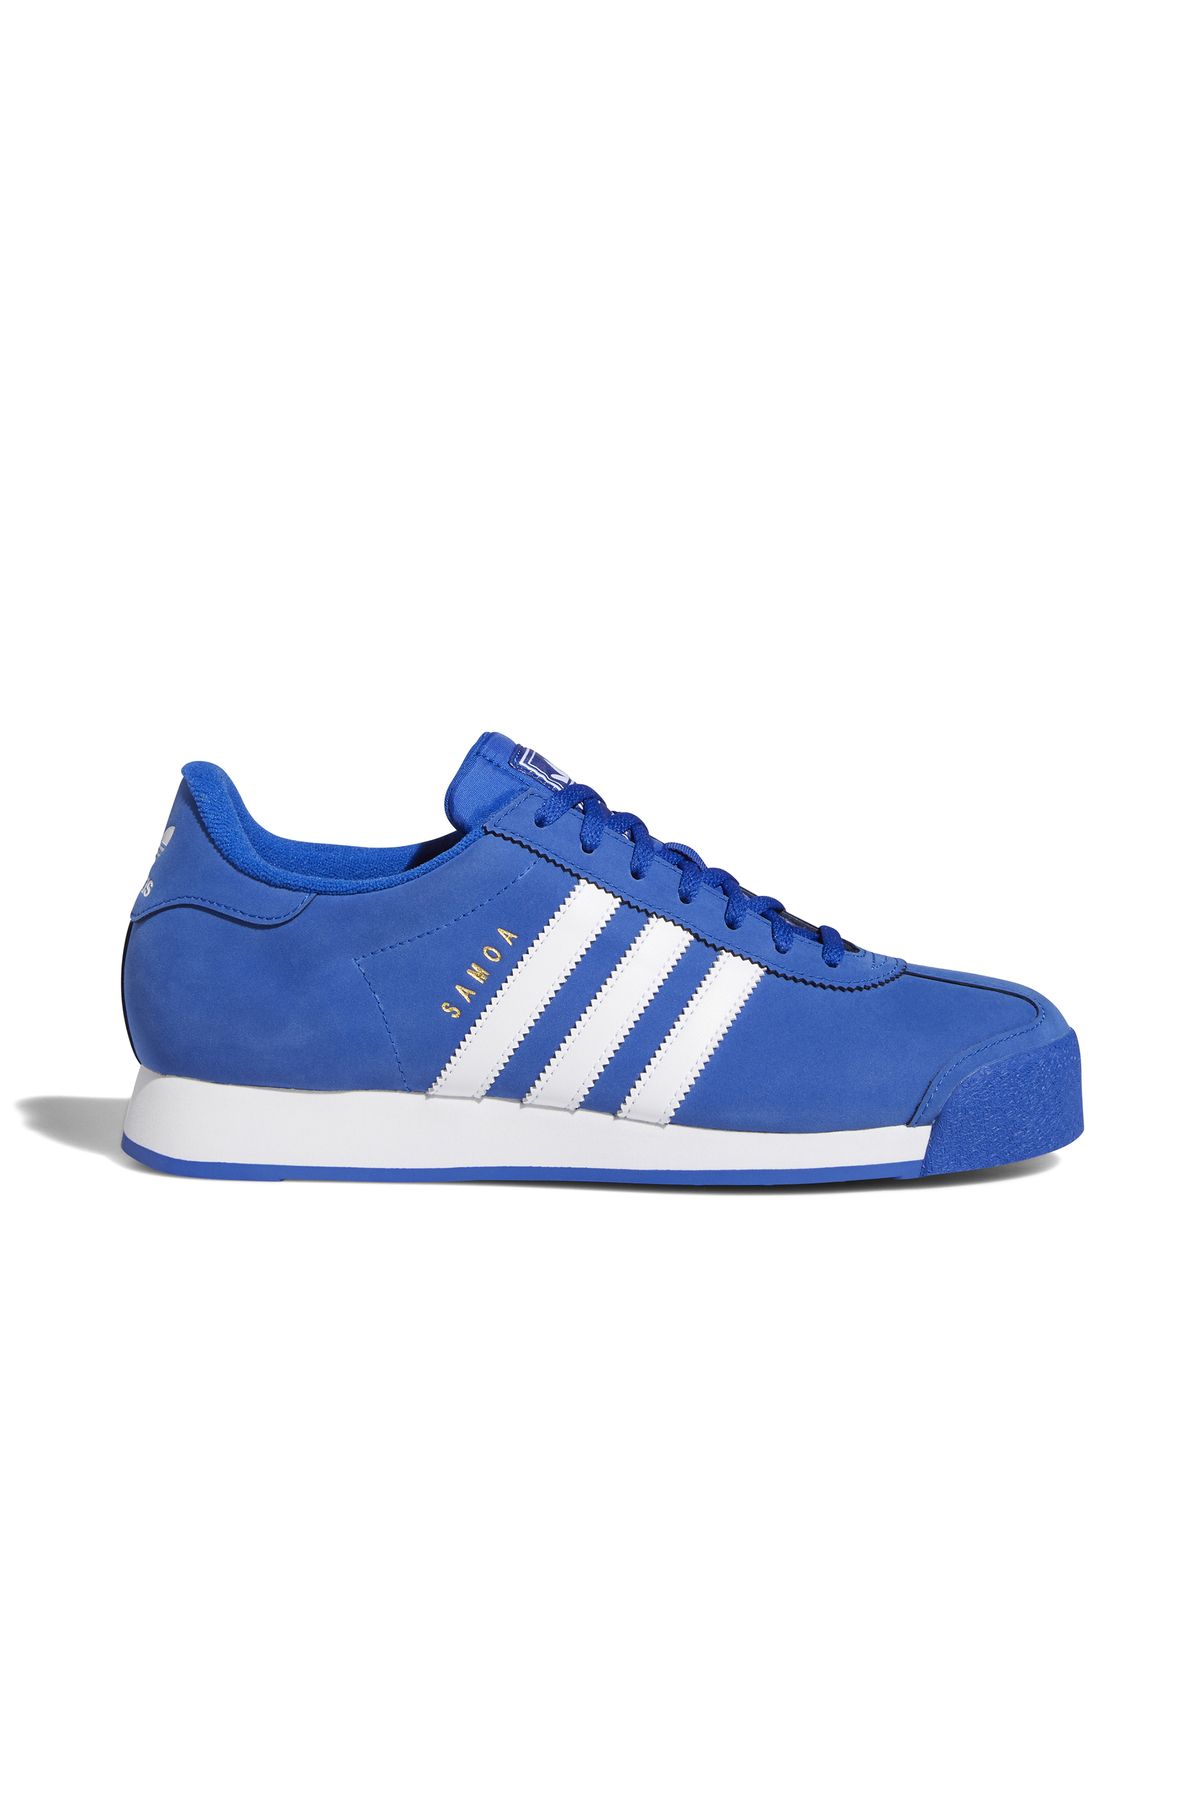 adidas Samoa Erkek Günlük Ayakkabı FV4985 Mavi